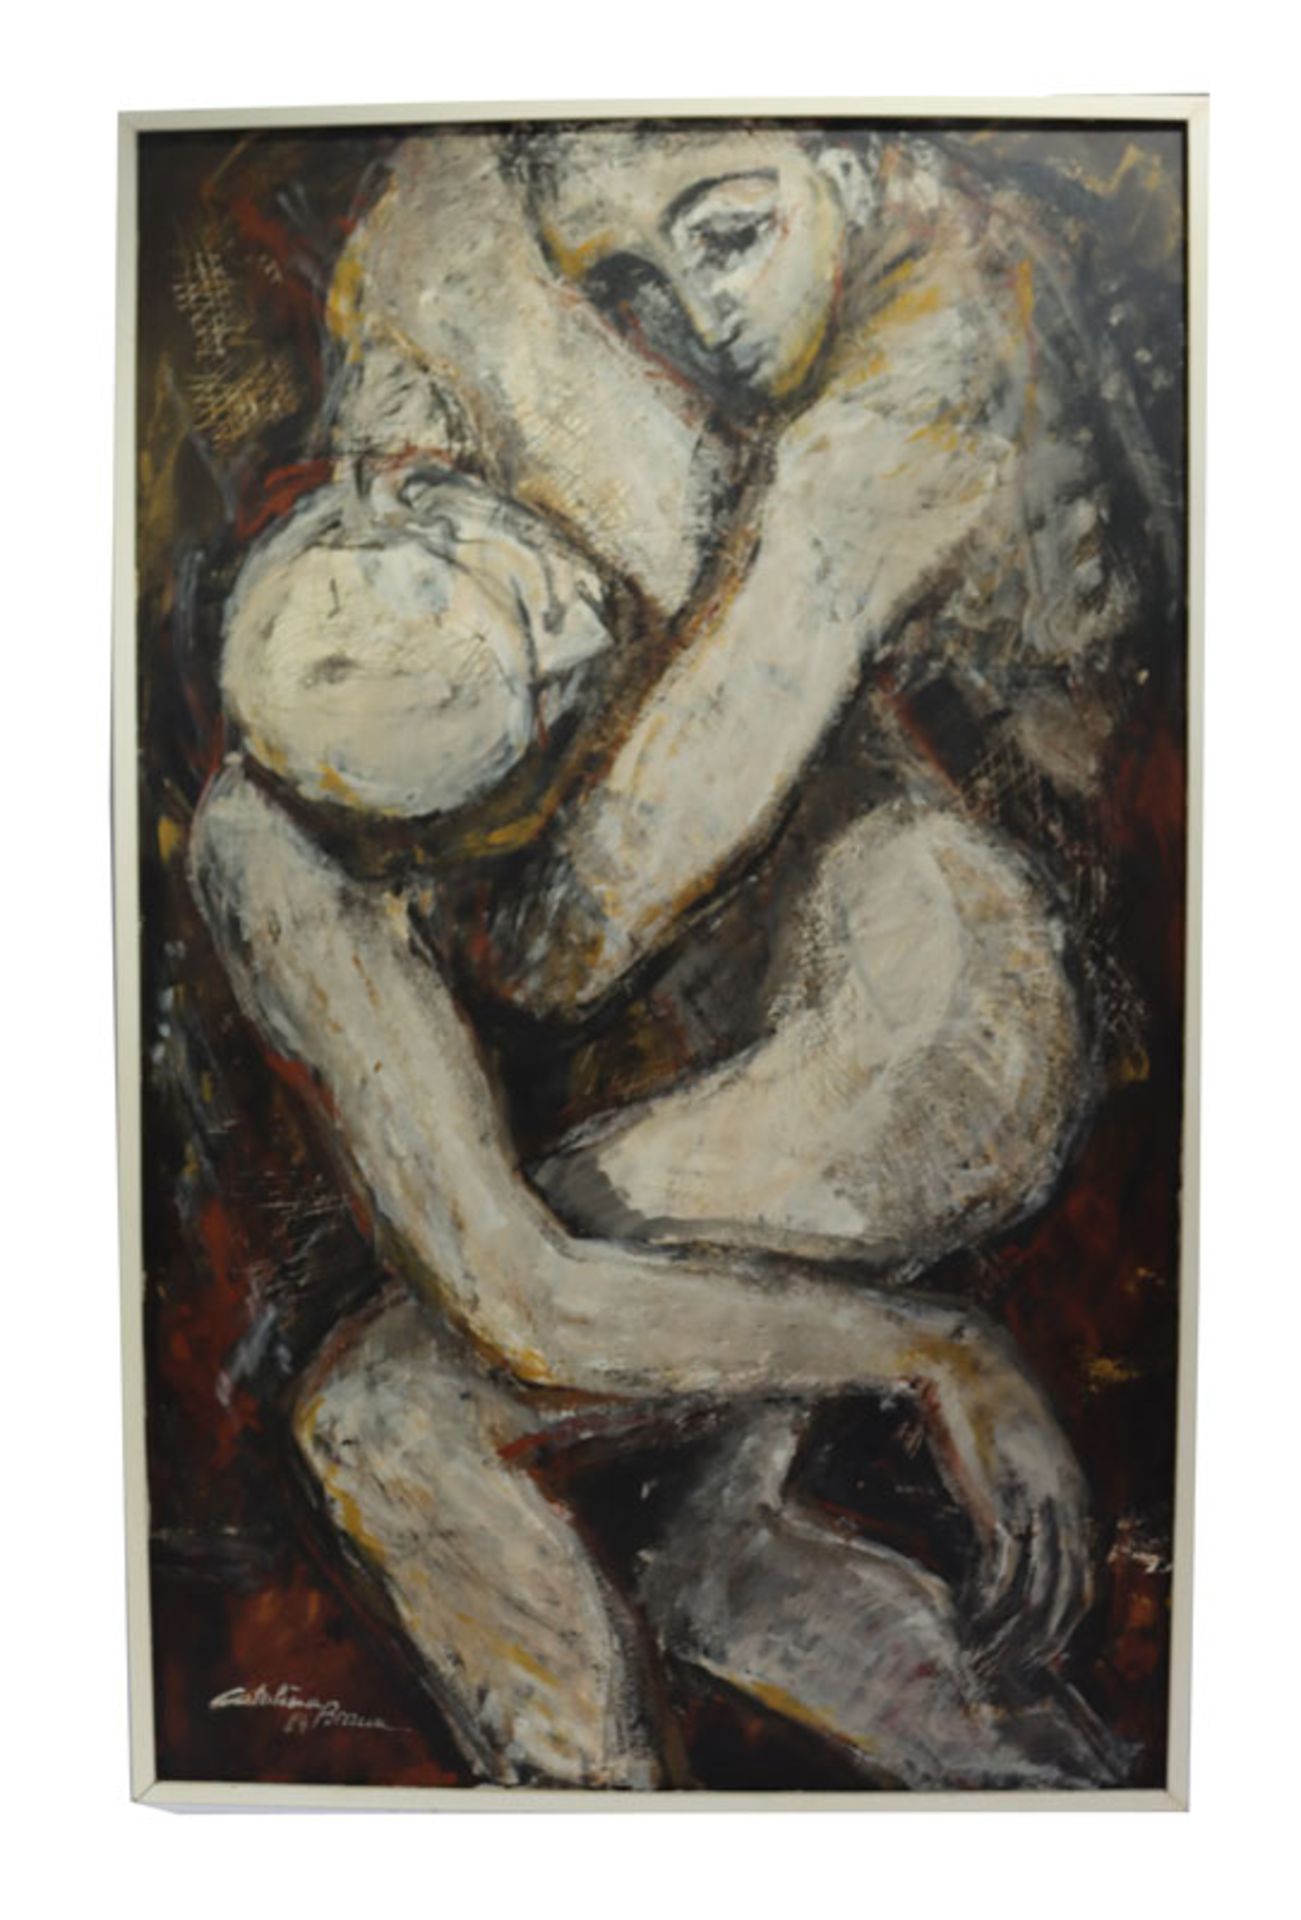 Gemälde ÖL/LW 'Liebespaar', signiert Catalina Braun,datiert 1984, * 1949, gerahmt, Rahmen leicht